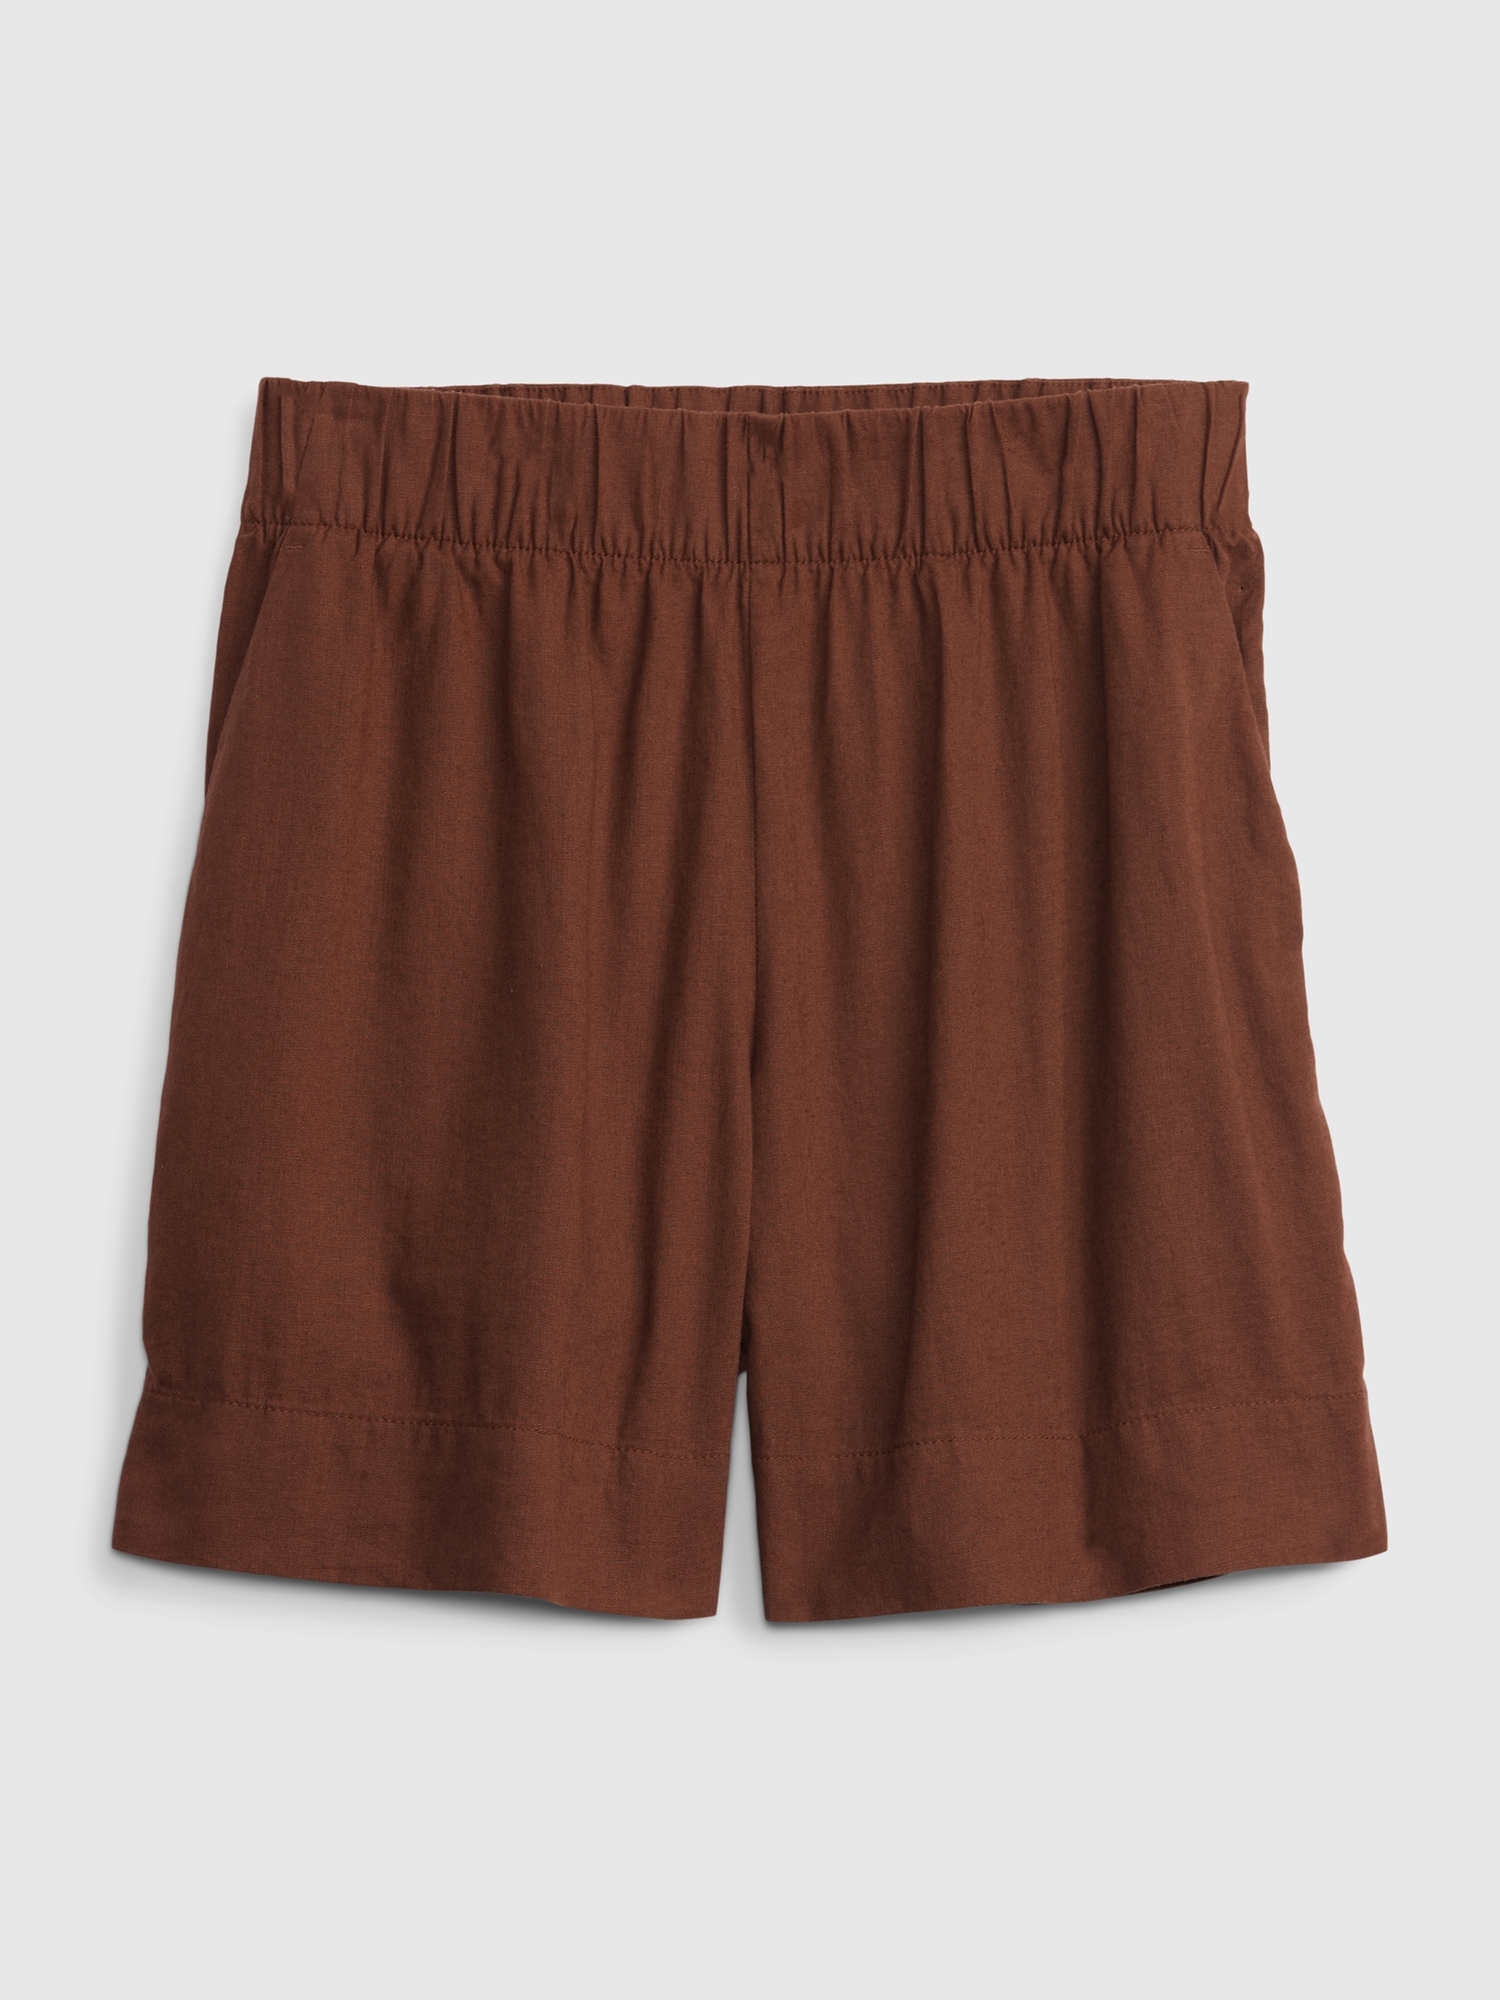 Gap - Pink Linen Shorts Rayon Linen